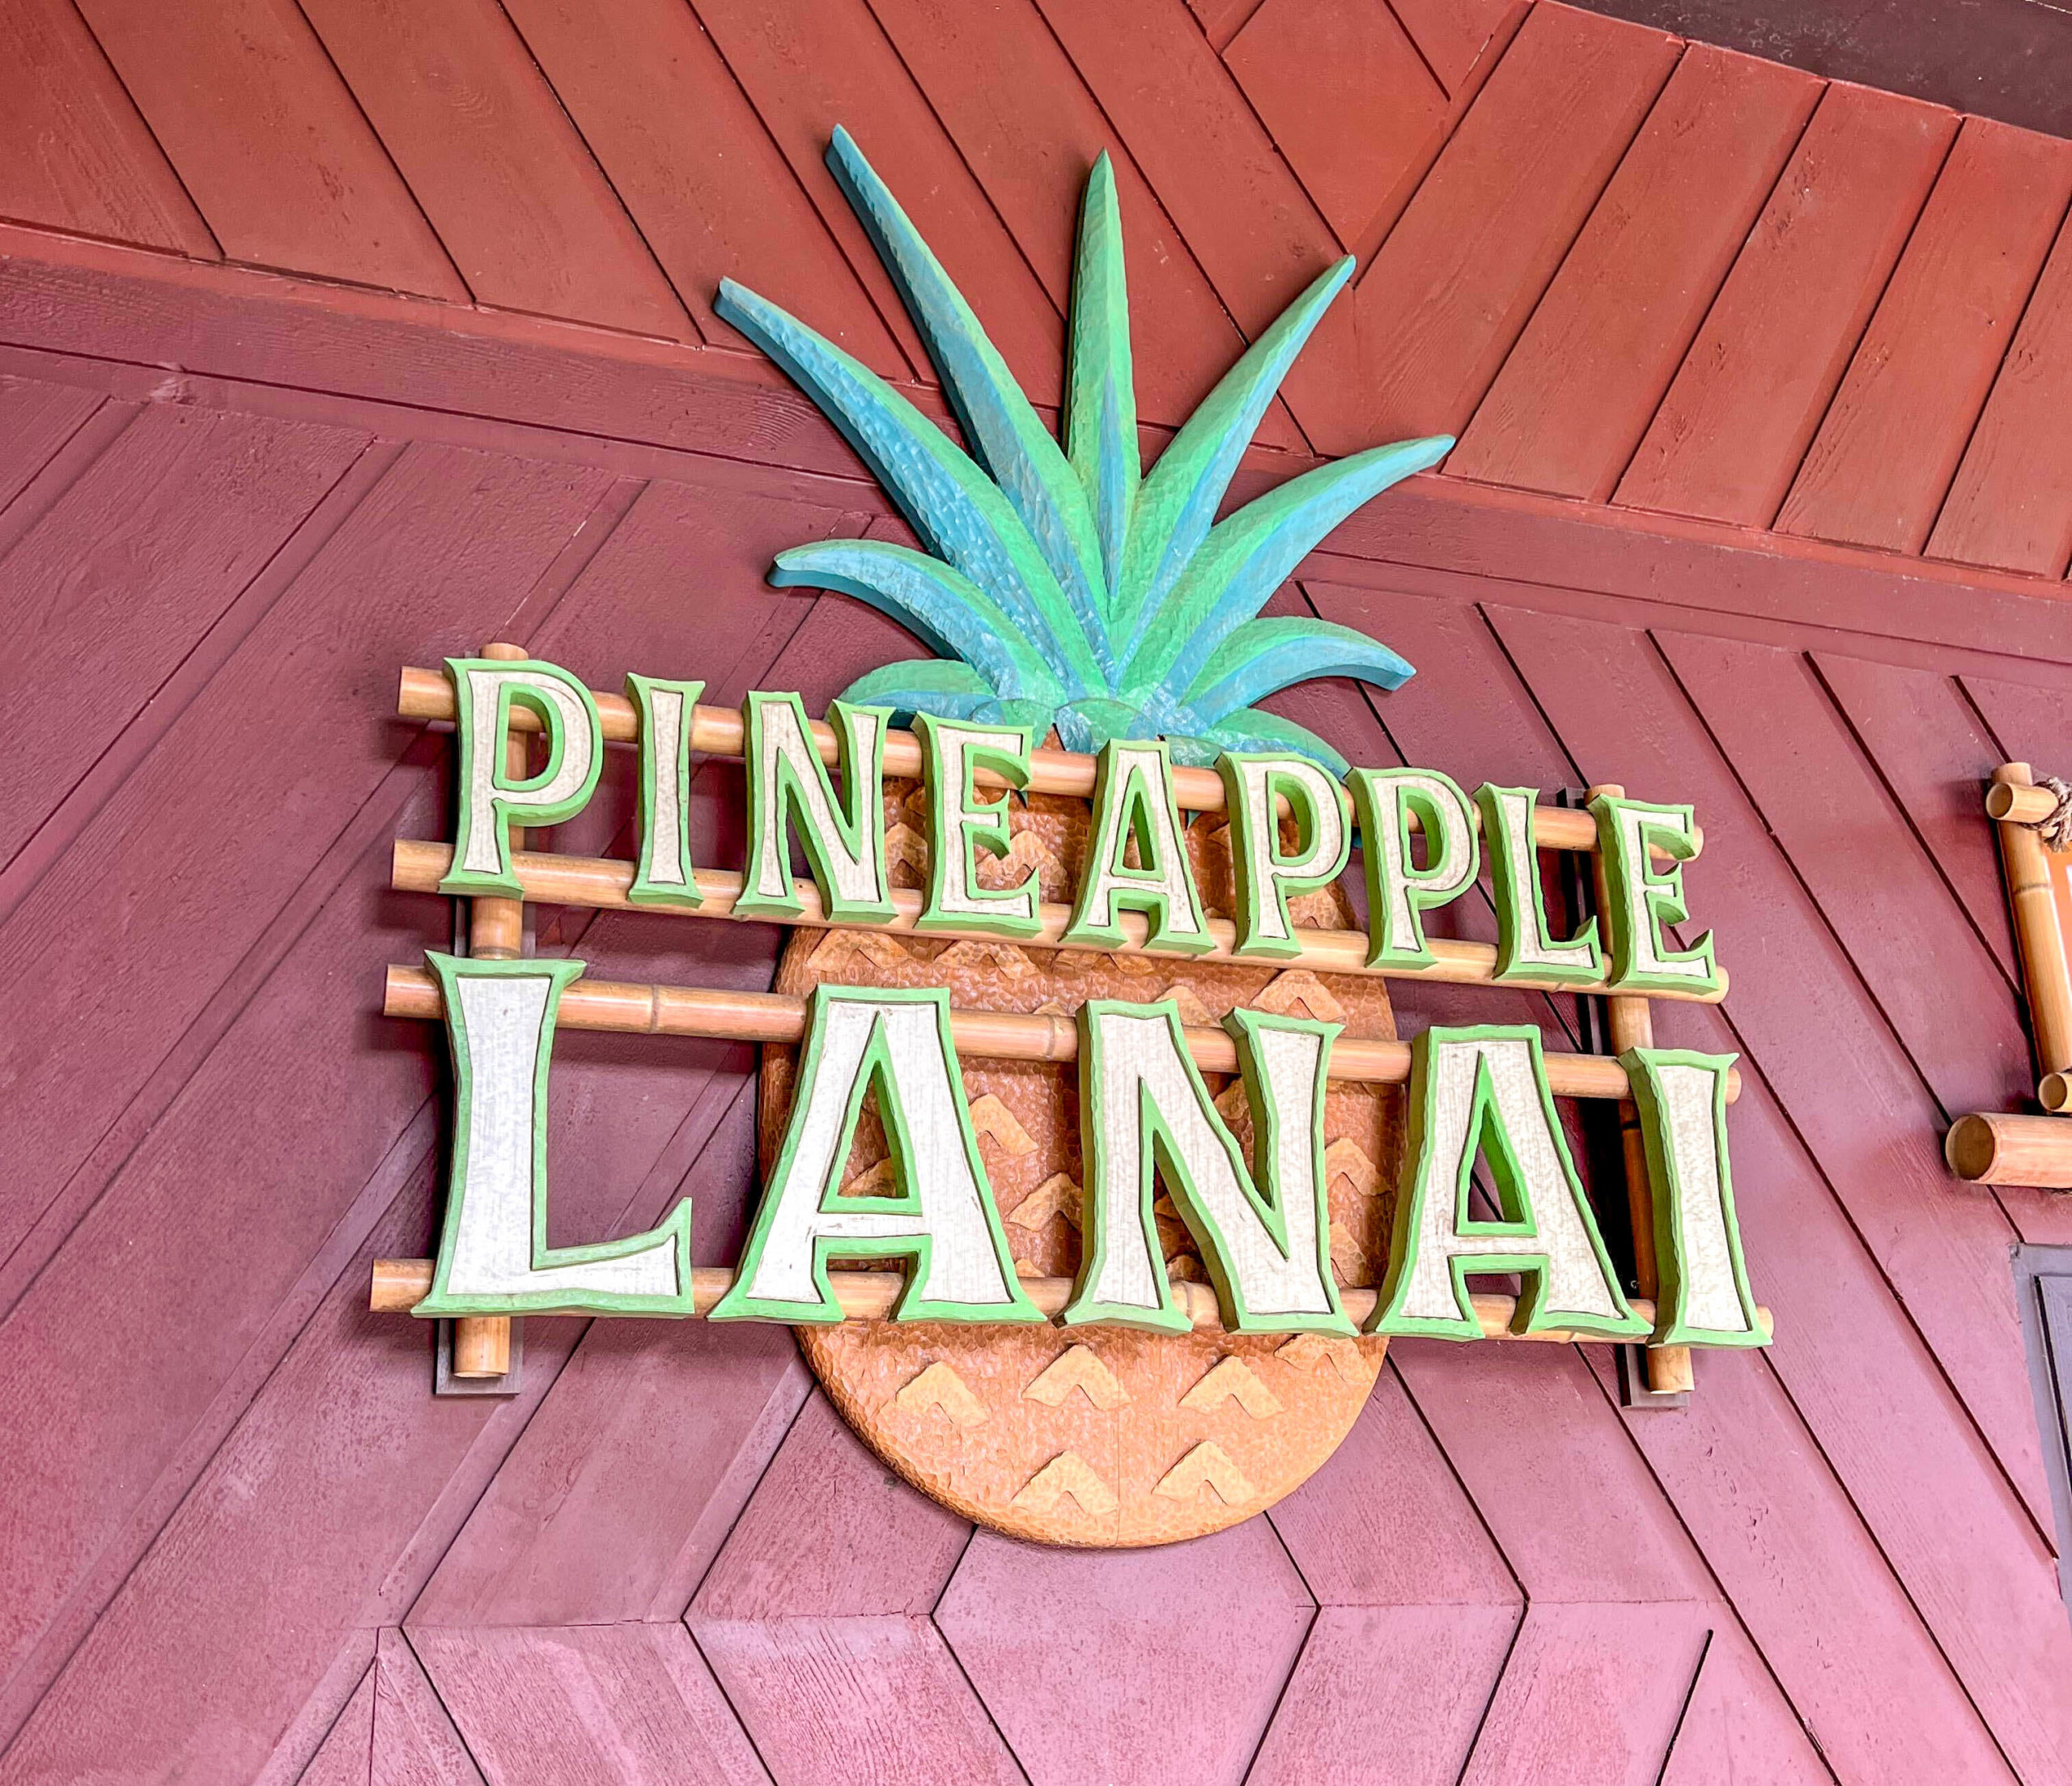 Pineapple Lanai